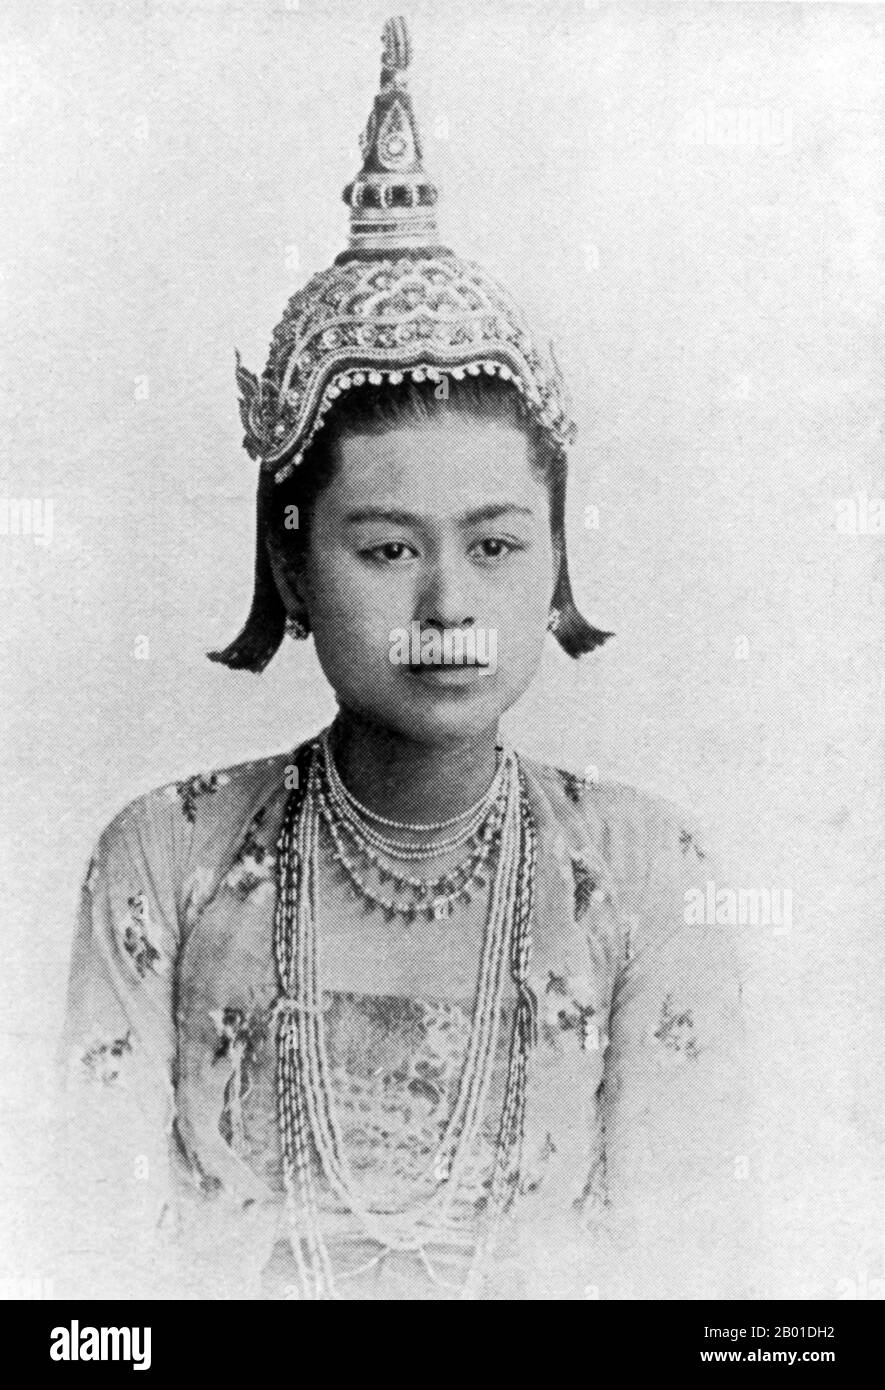 Birmanie : une princesse burmane. Photo de Max Henry Ferrars (28 octobre 1846 - 7 février 1933) c. 1900. La conquête britannique de la Birmanie a commencé en 1824 en réponse à une tentative birmane d'envahir l'Inde. En 1886, et après deux autres guerres, la Grande-Bretagne avait incorporé tout le pays dans le Raj britannique. Pour stimuler le commerce et faciliter les changements, les Britanniques ont fait venir des Indiens et des Chinois, qui ont rapidement déplacé les Birmans dans les zones urbaines. À ce jour, Rangoon et Mandalay ont de grandes populations indiennes ethniques. Des chemins de fer et des écoles ont été construits, ainsi qu'un grand nombre de prisons. Banque D'Images